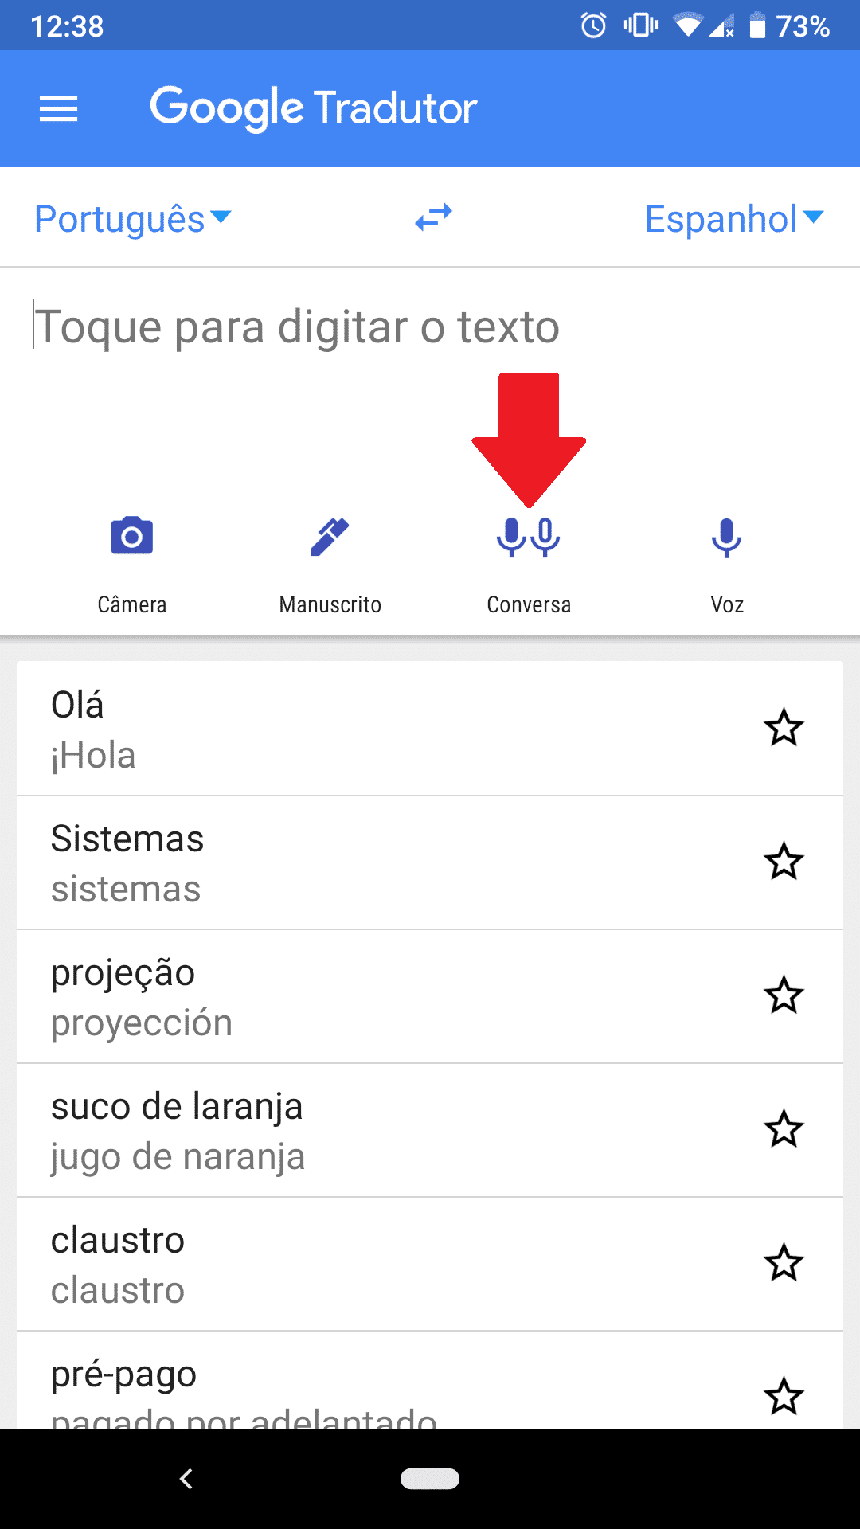 Como Gravar a Voz do Google Tradutor em um Android